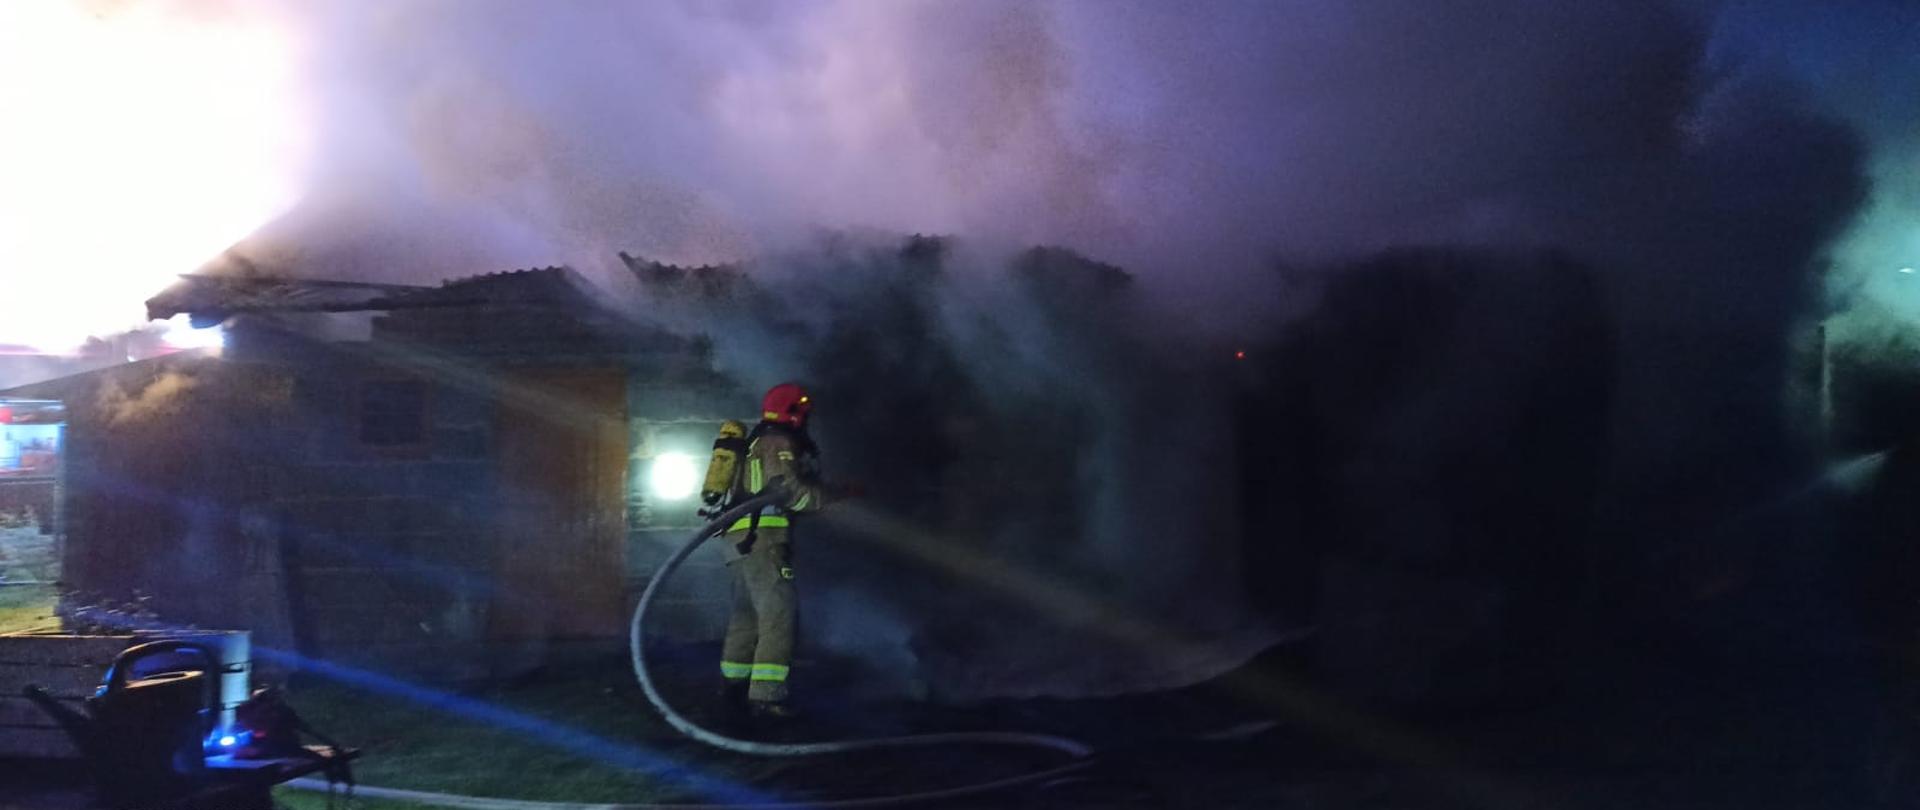 Zdjęcie obrazuje strażaka trzymającego w rękach prądownicę oraz wąż pożarniczy. Strażak w umundurowaniu bojowym z założonym na plecach aparatem ochrony dróg oddechowych. Zdjęcie zrobione w porze nocnej. Przed strażakiem znajduje się murowany budynek gospodarczy spowity gęstym dymem pożarowym. 